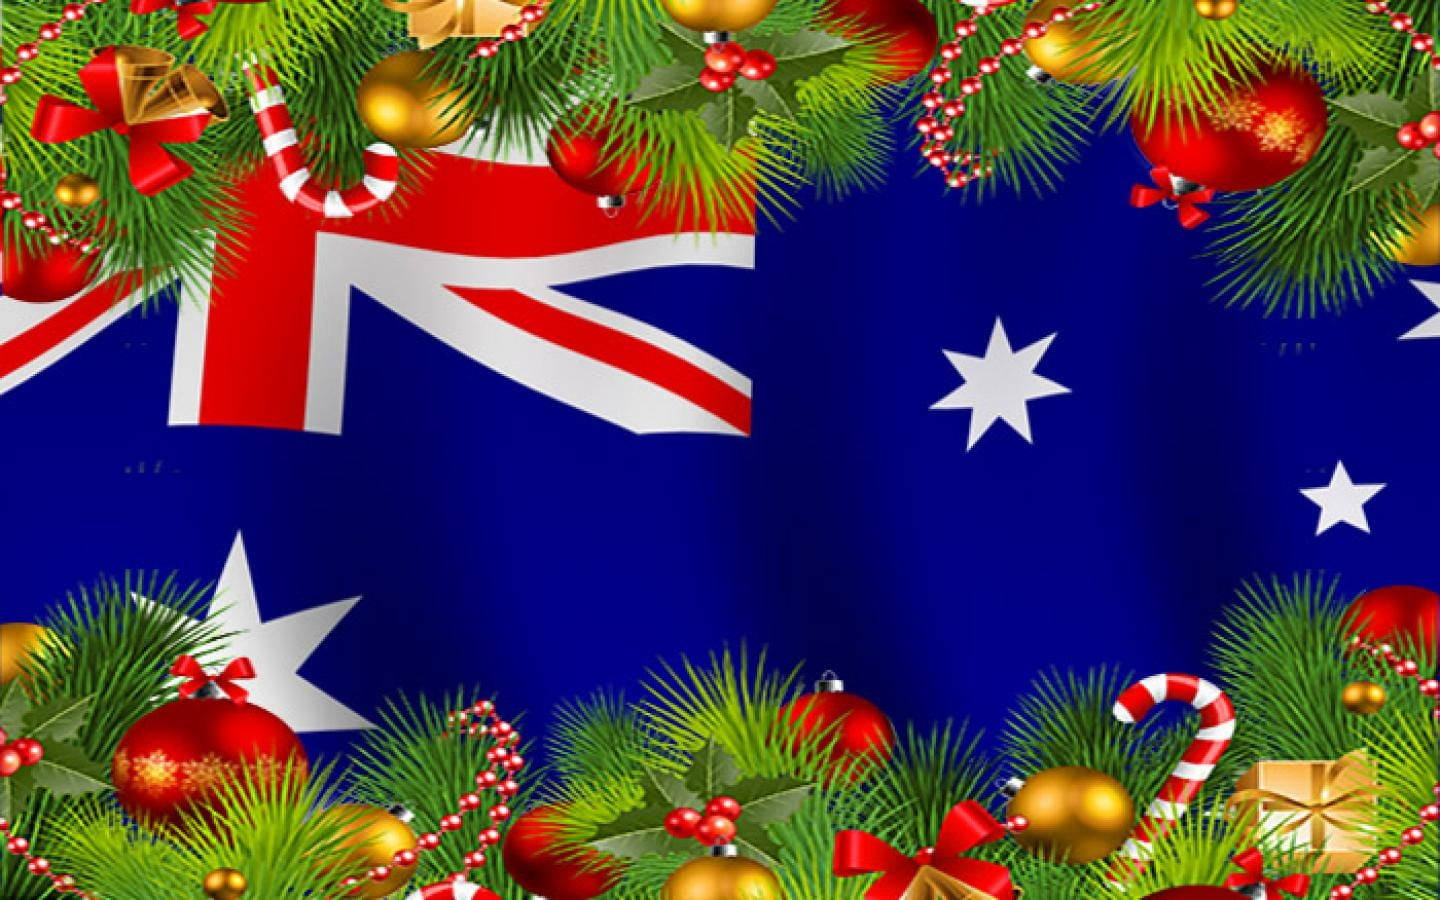 Banderade Navidad Australiana Fondo de pantalla